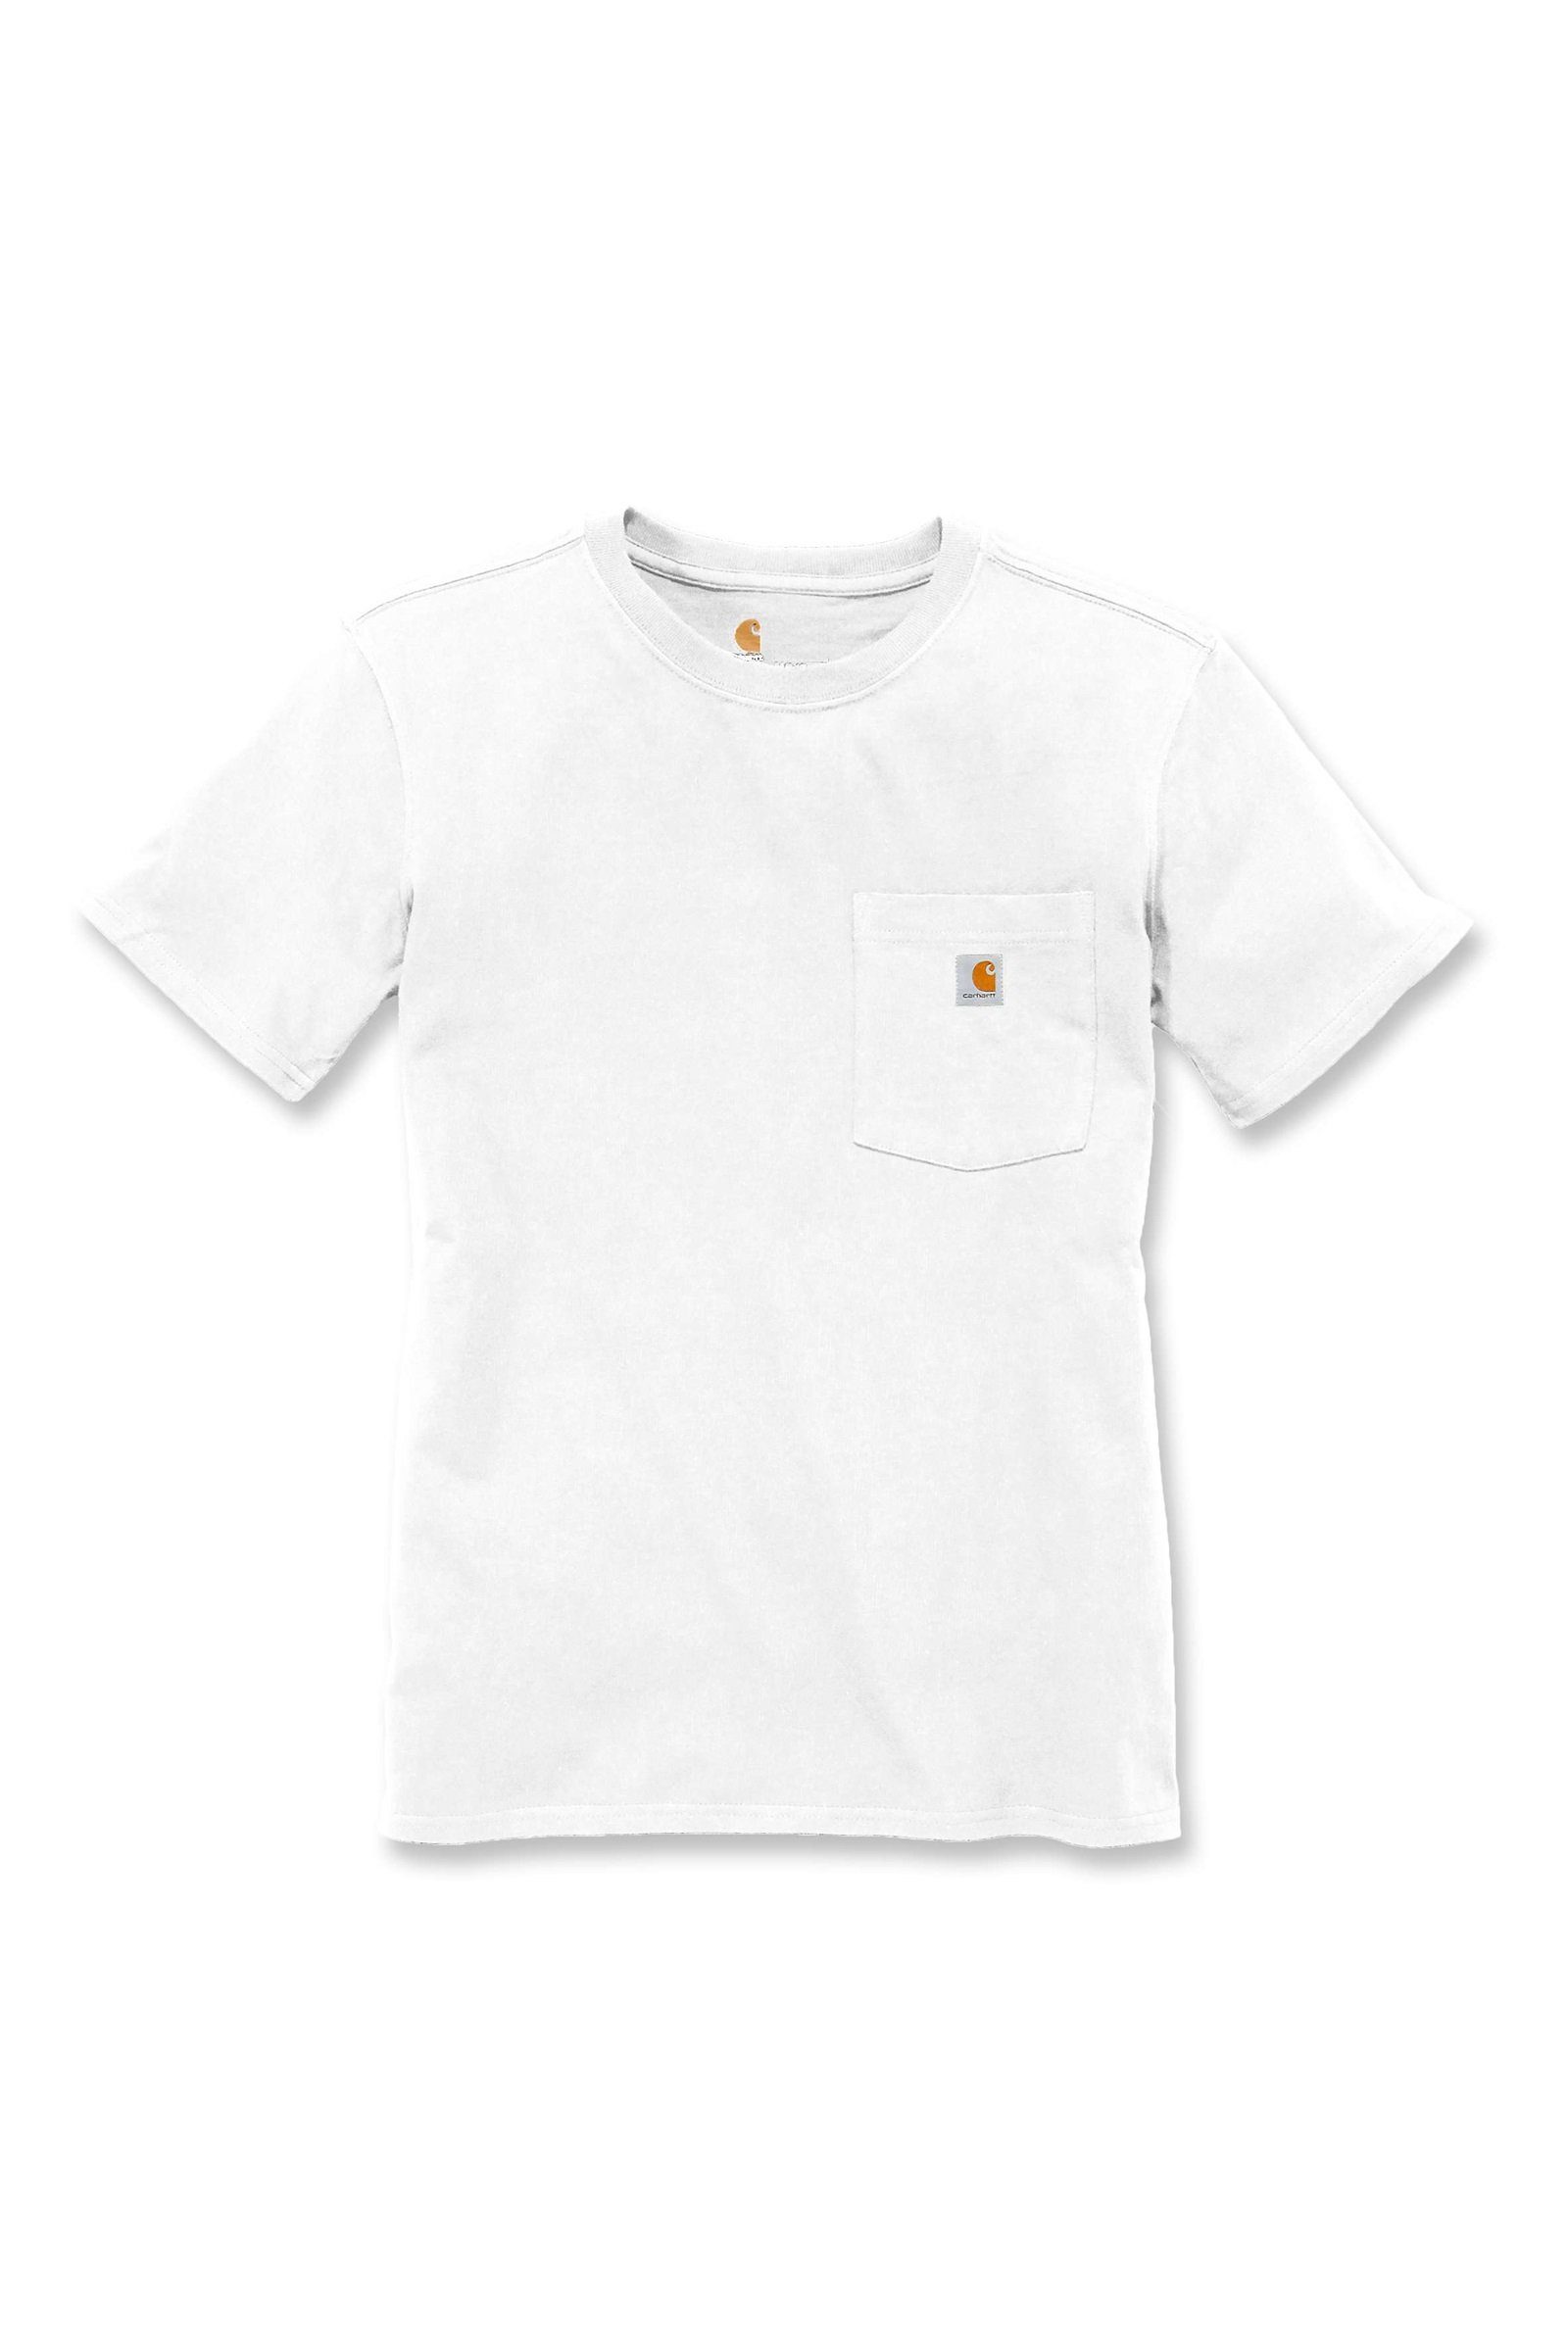 Damen Adult Pocket Heavyweight Carhartt Loose Fit T-Shirt white T-Shirt Carhartt Short-Sleeve